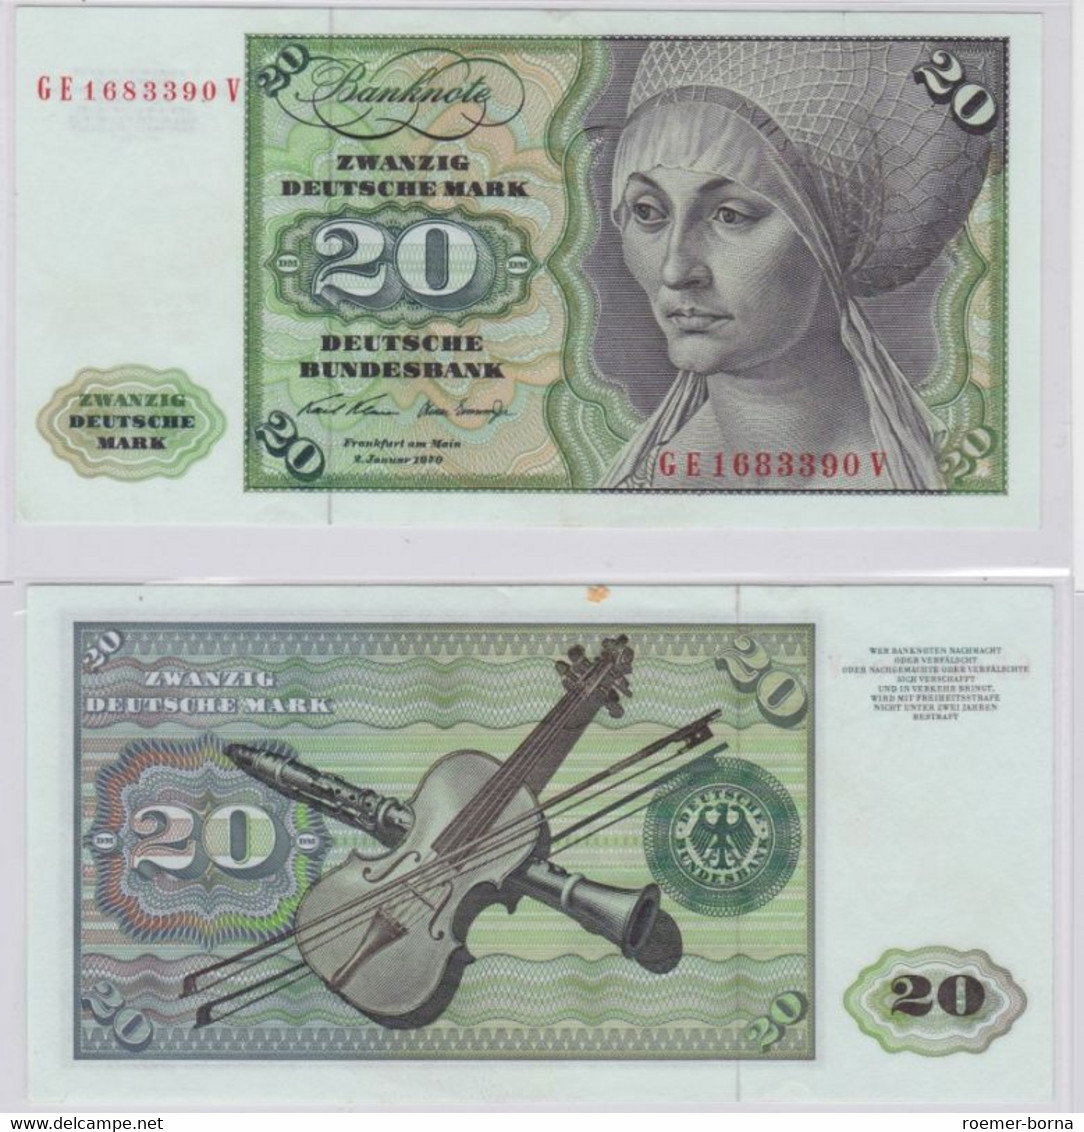 T145720 Banknote 20 DM Deutsche Mark Ro. 271b Schein 2.Jan. 1970 KN GE 1683390 V - 20 DM